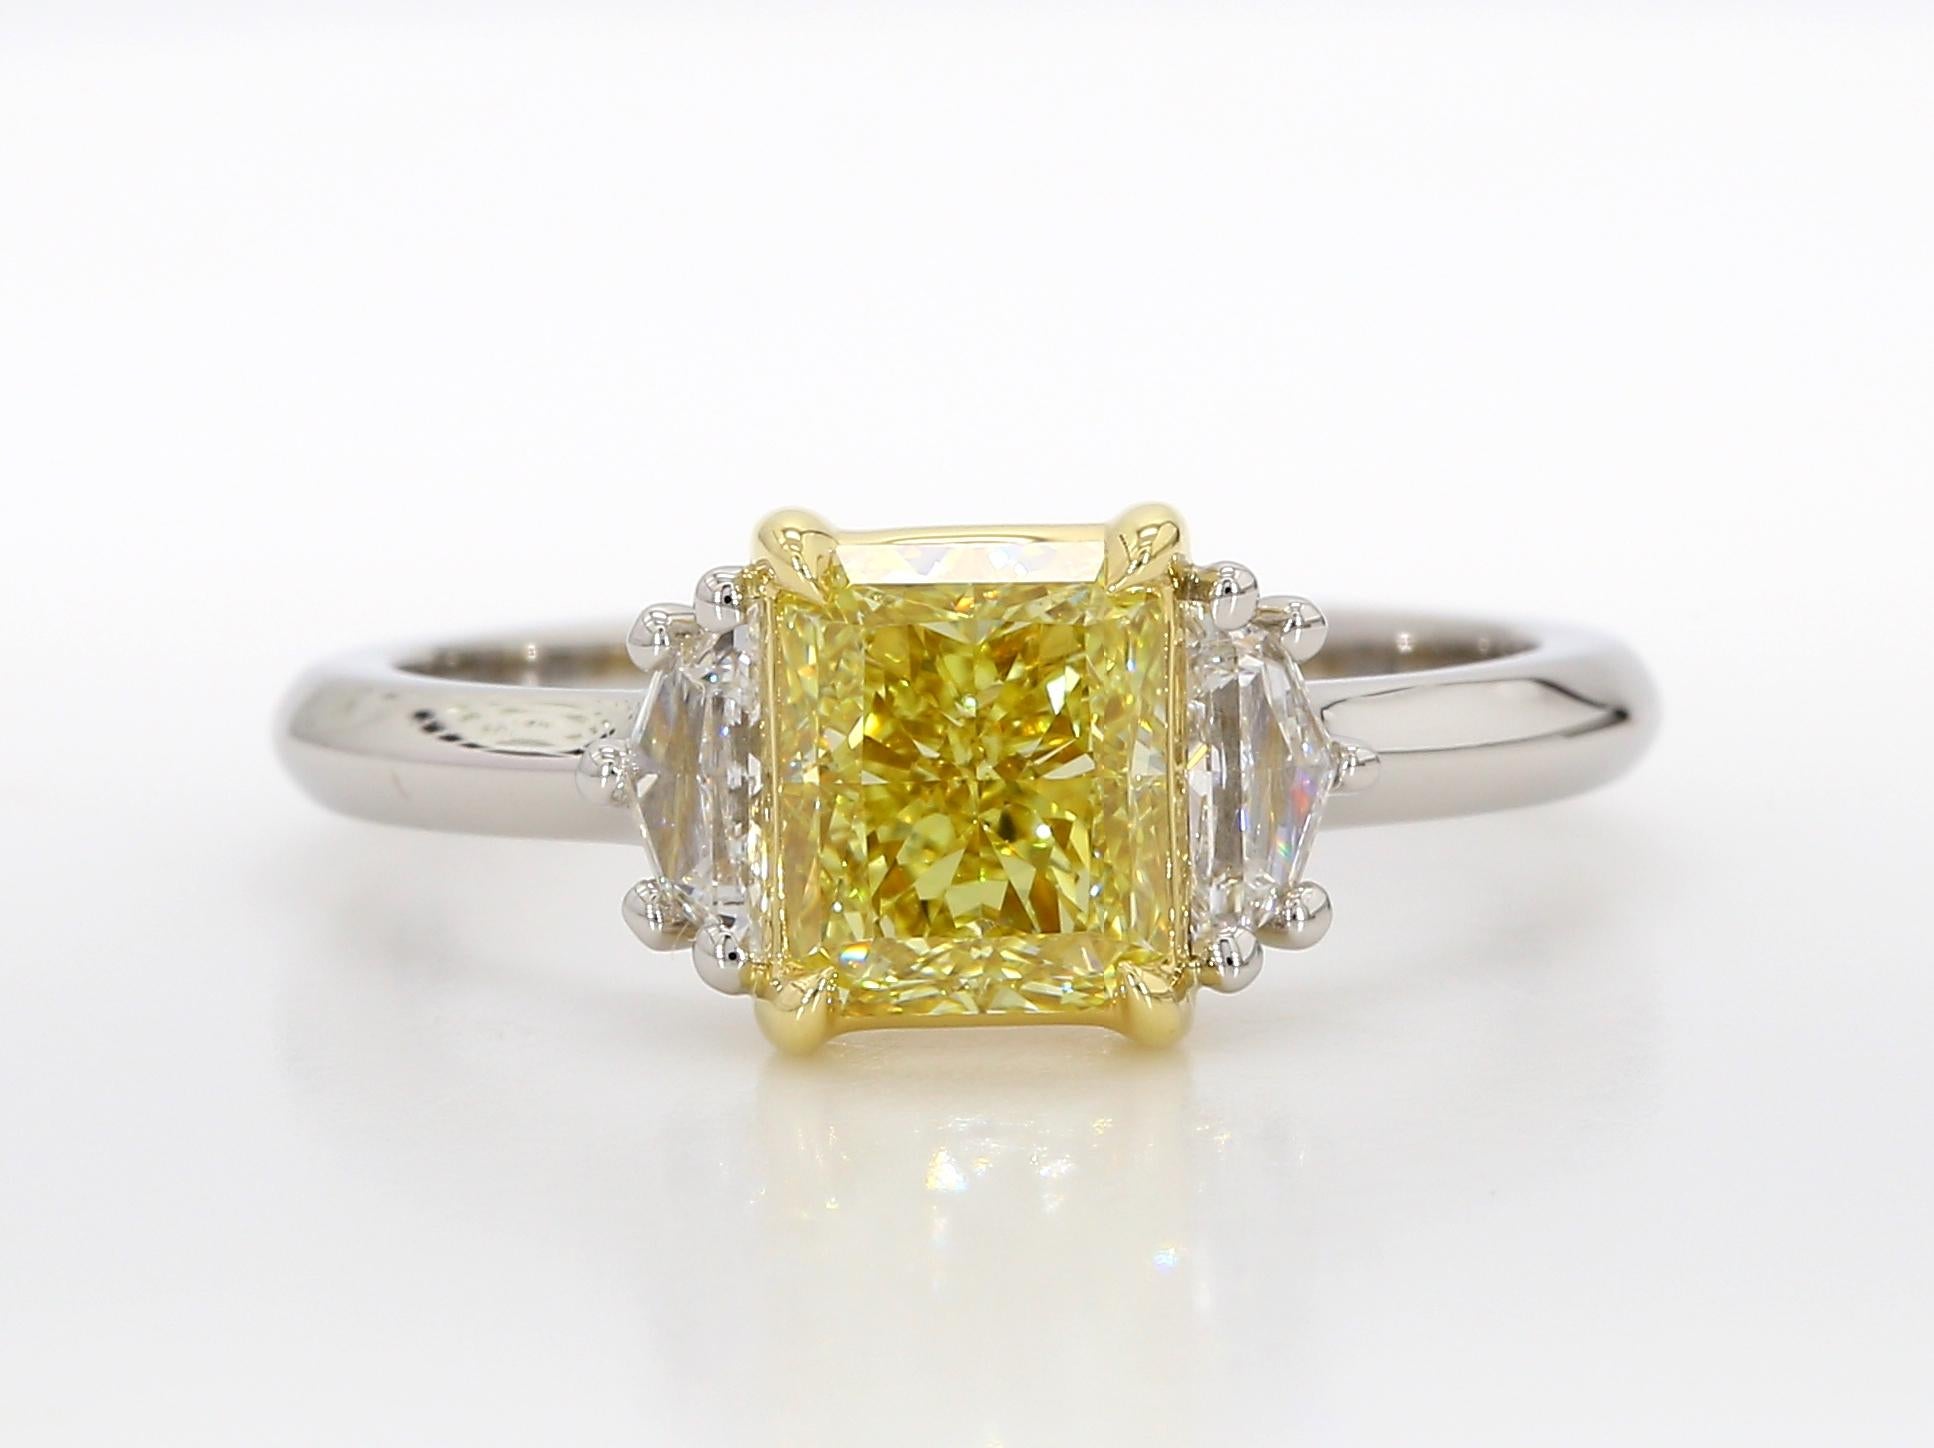 Cette magnifique bague de fiançailles à trois pierres est ornée d'un diamant radiant de 1,42 carat de couleur jaune intense. Ce diamant a été certifié par la GIA comme étant sans défaut interne, ce qui souligne sa clarté exceptionnelle. Le diamant